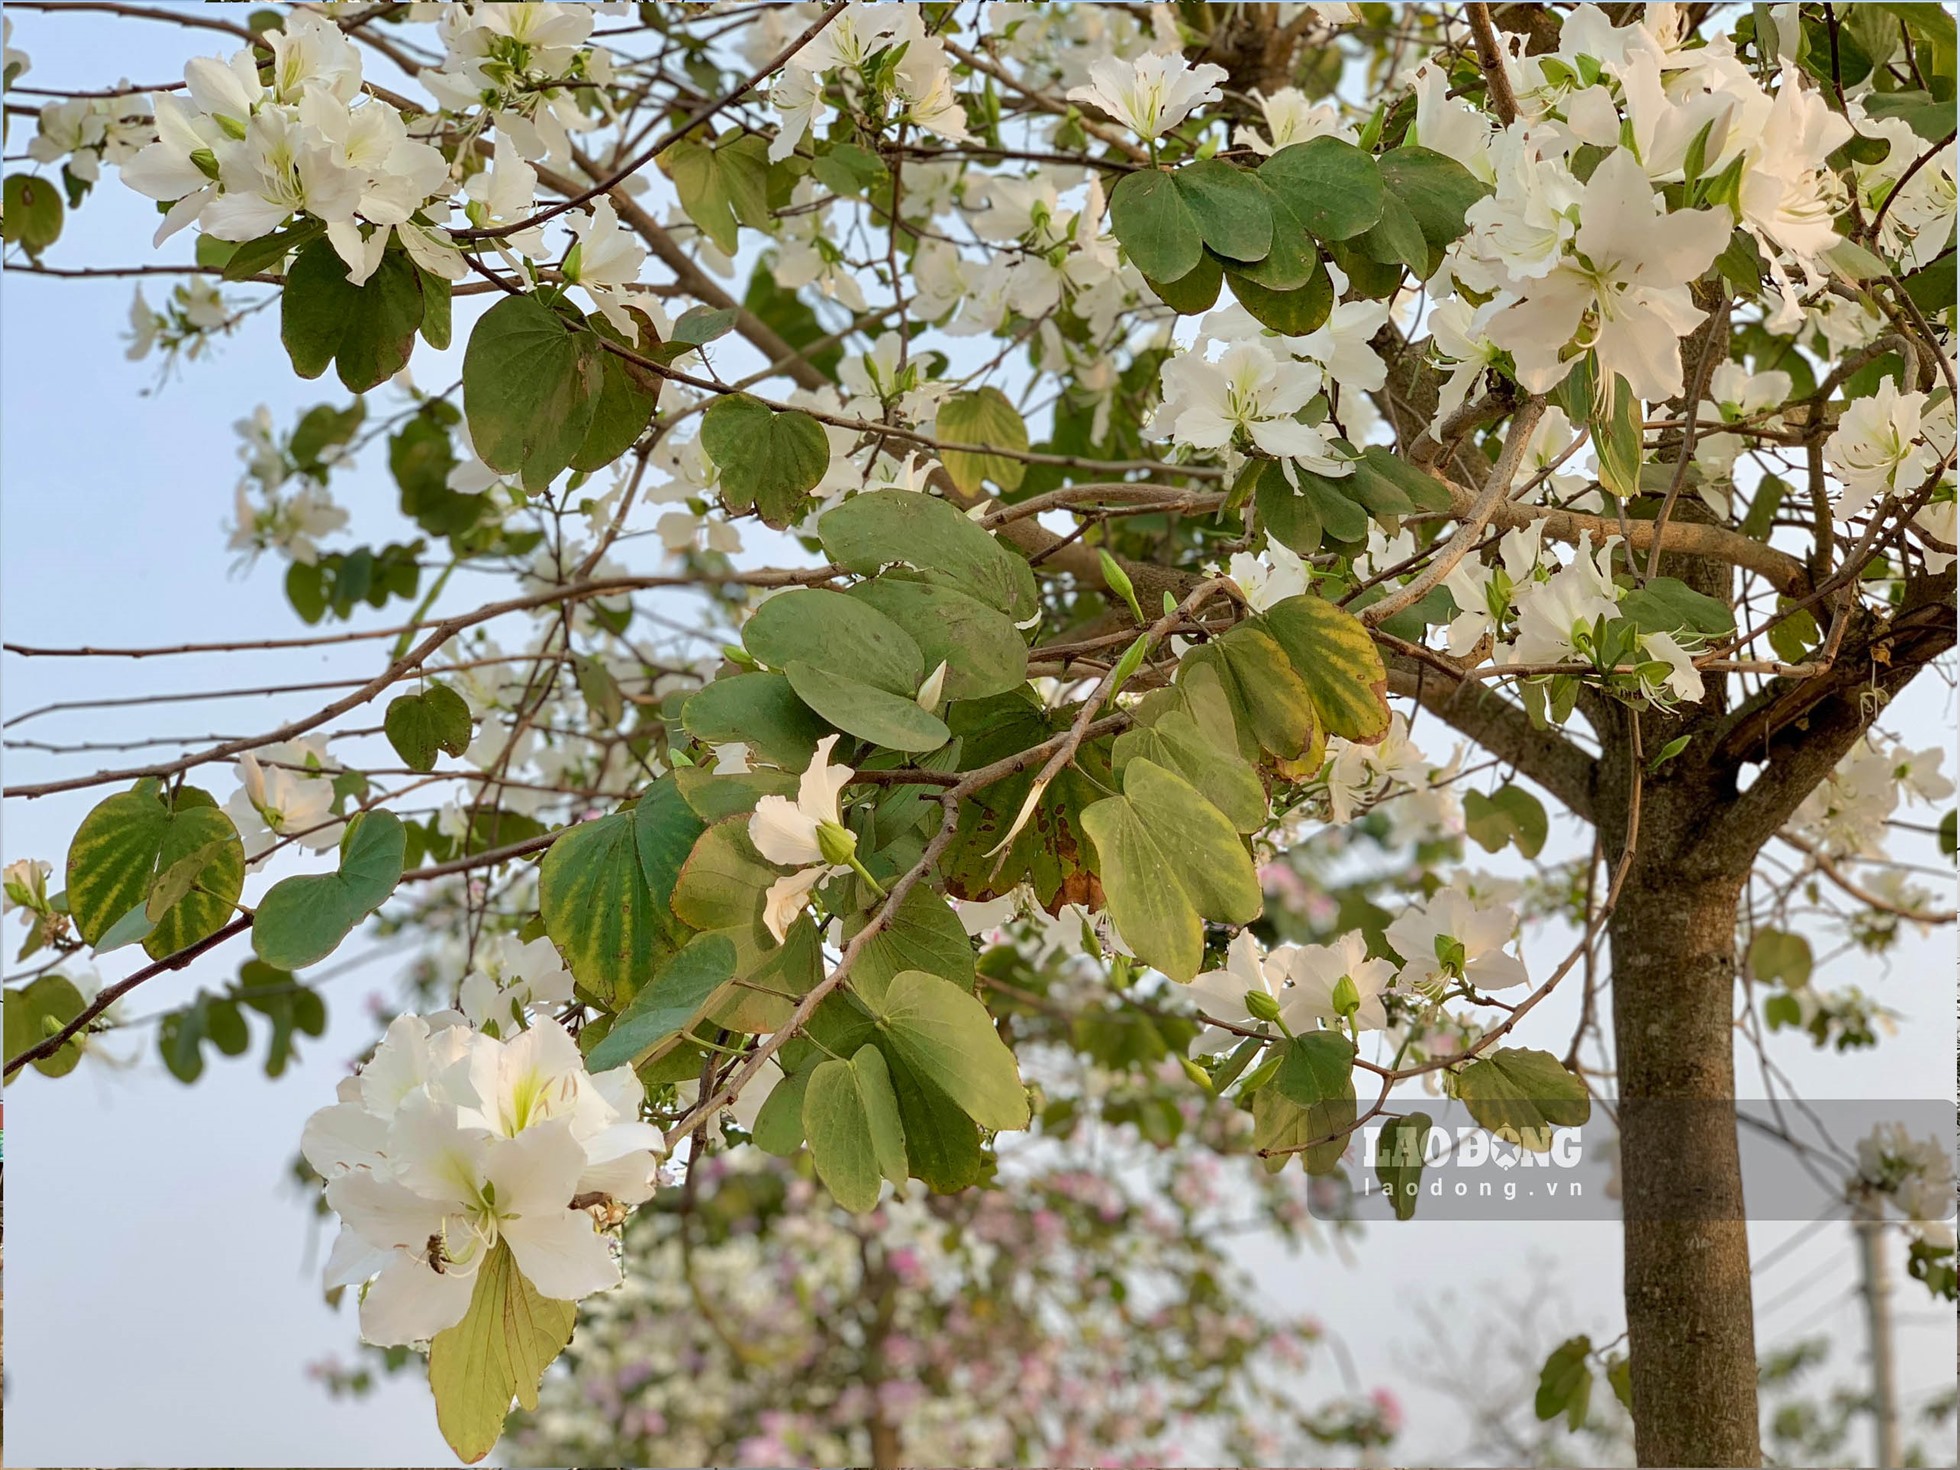 Hoa ban là loài hoa đặc trưng của núi rừng Tây Bắc, thường nở vào cuối tháng 2 và đầu tháng 3 (dương lịch).